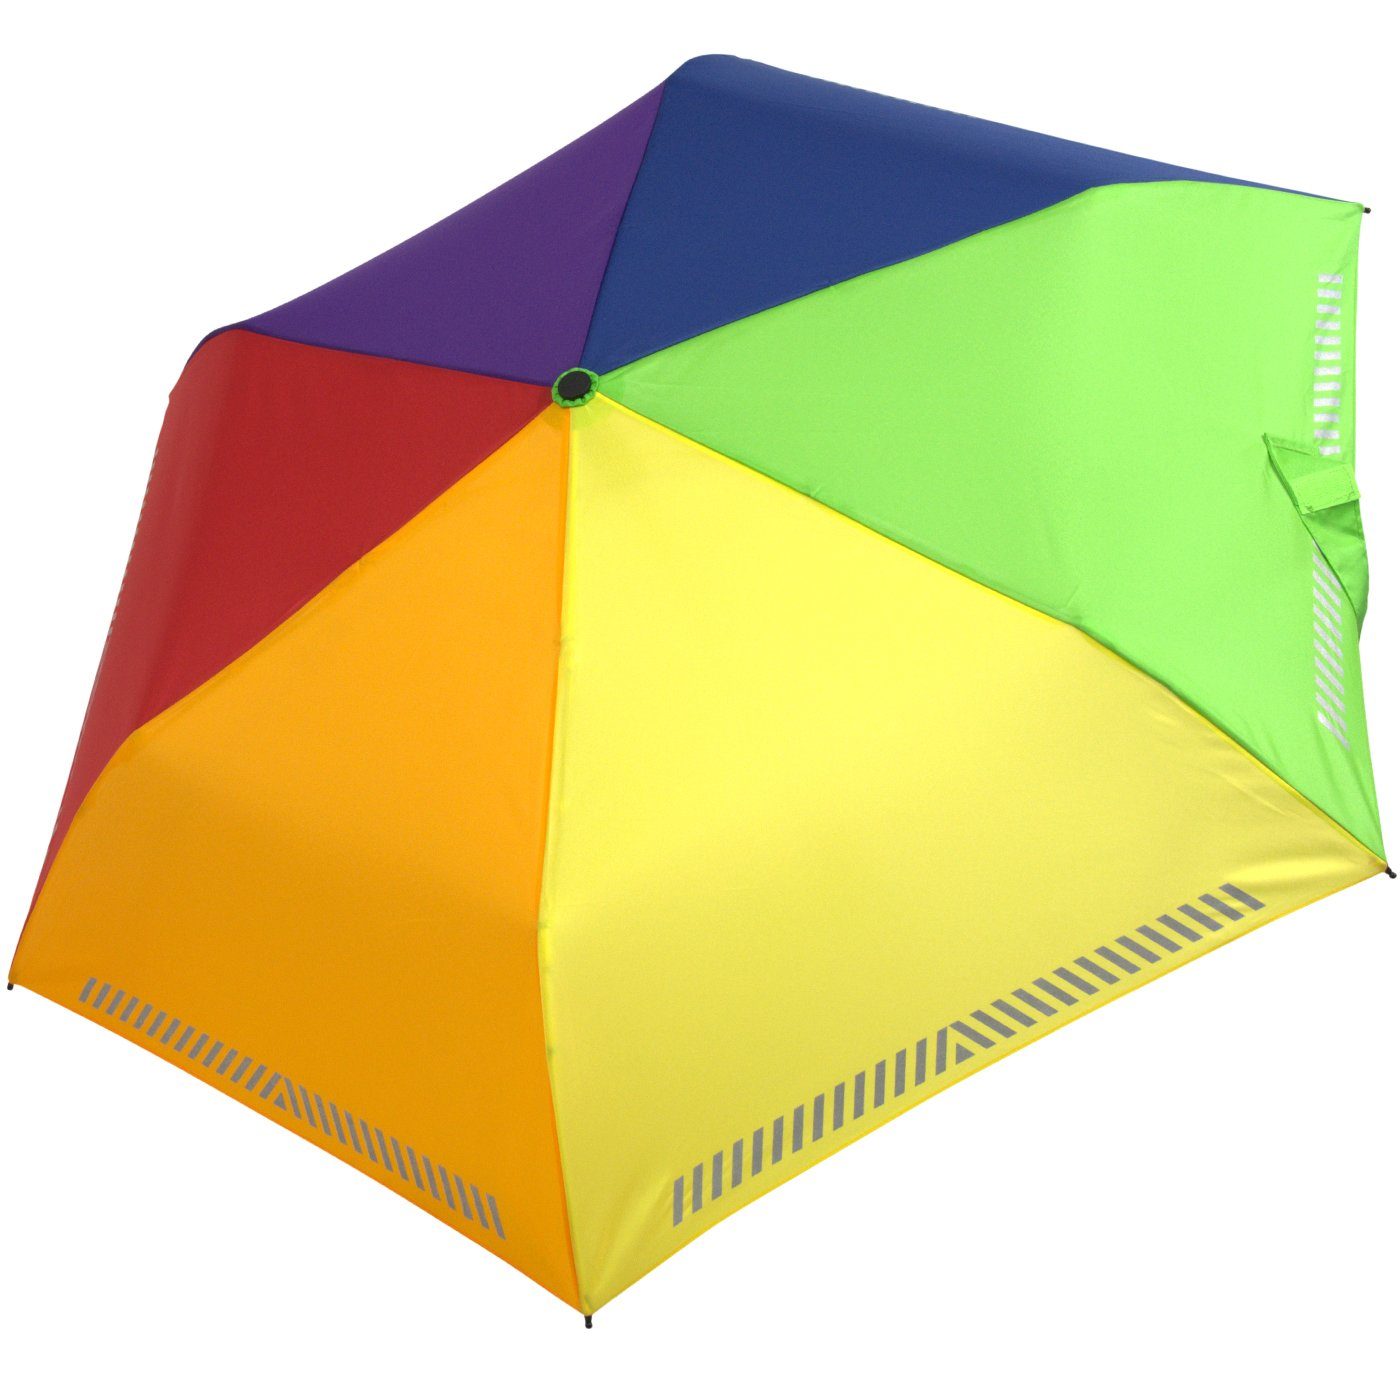 iX-brella Taschenregenschirm Kinderschirm Sicherheit Reflex-Streifen reflektierend, mit Auf-Zu-Automatik, Regenbogen - durch